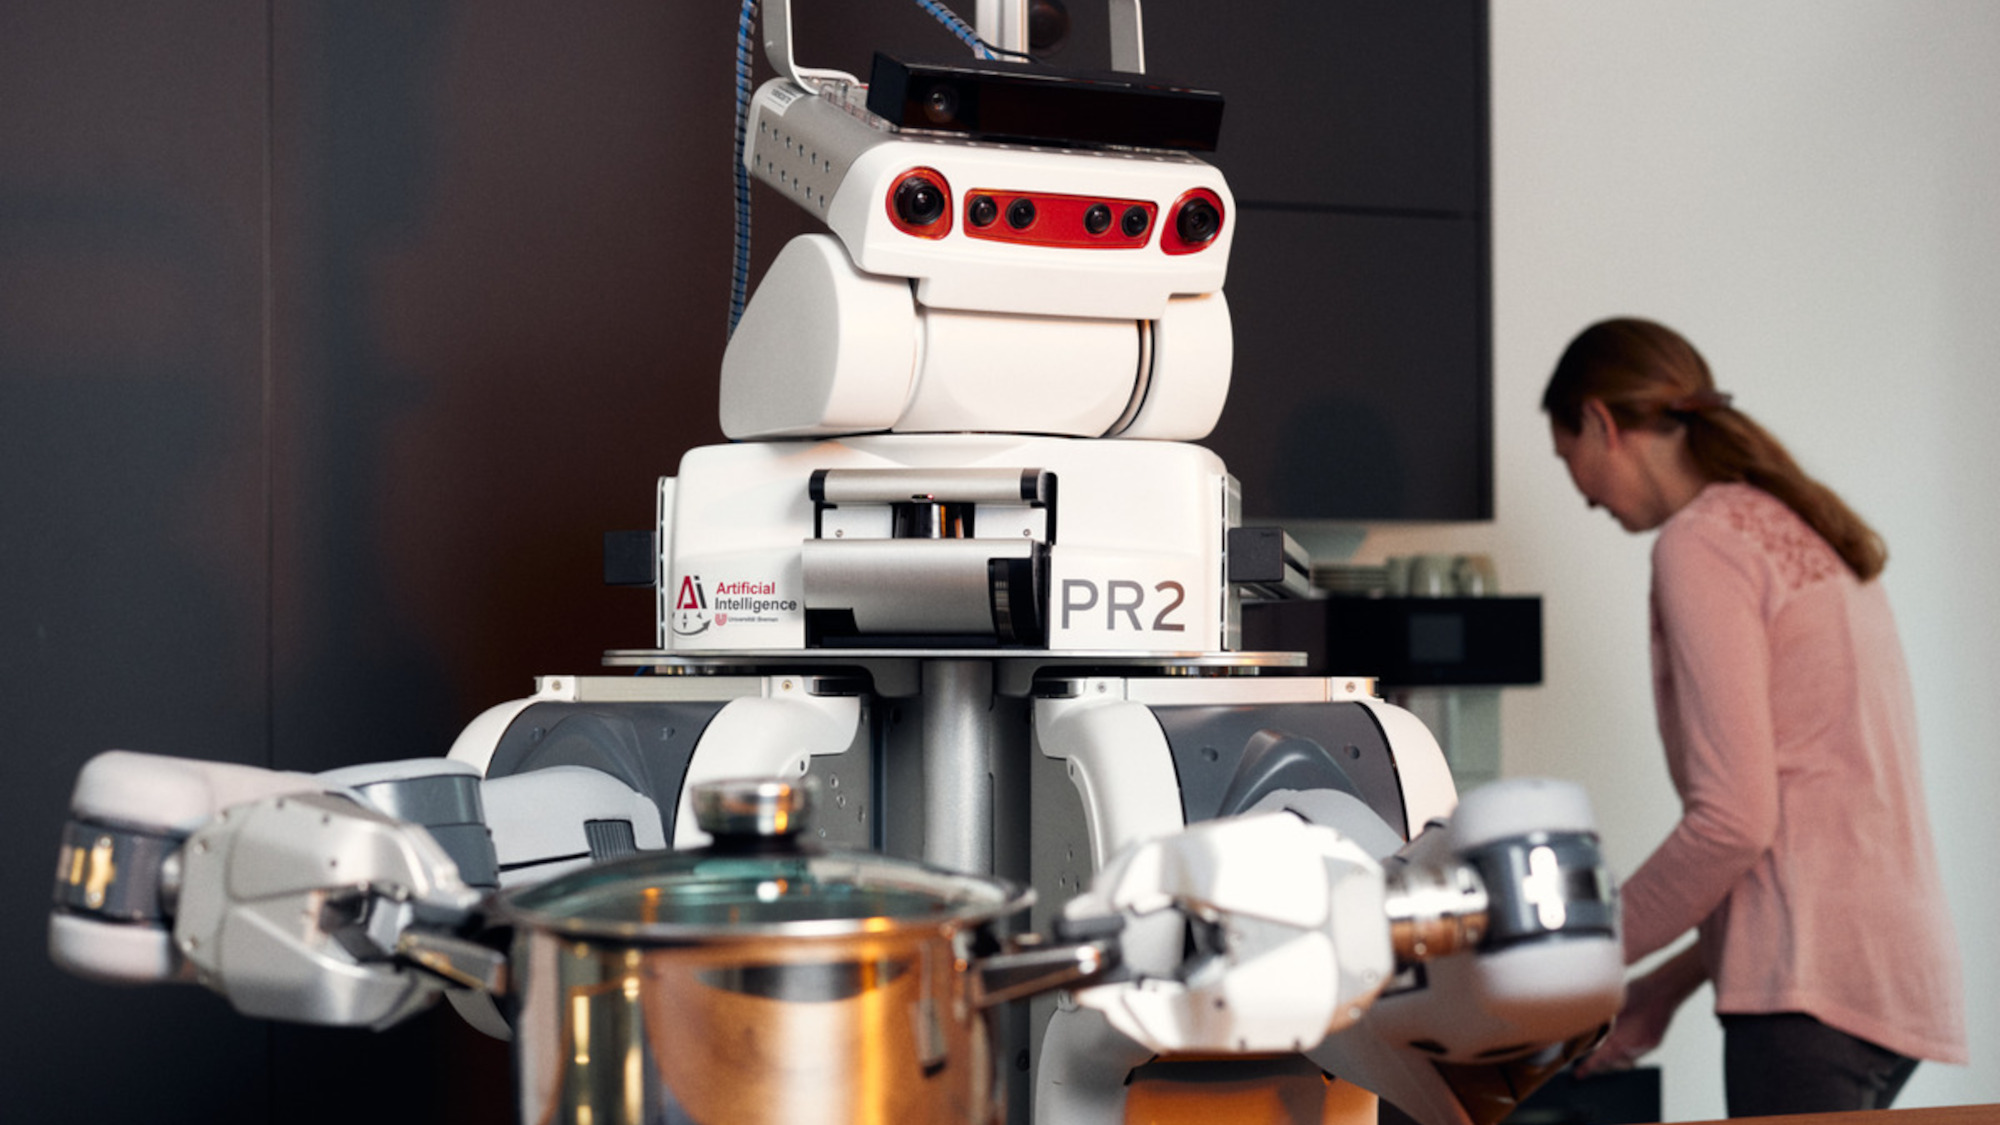 Ein Roboter hält einen Kochtopf in seinen Händen. Er hilft der Frau, die im Hintergrund zu sehen ist, beim Kochen.